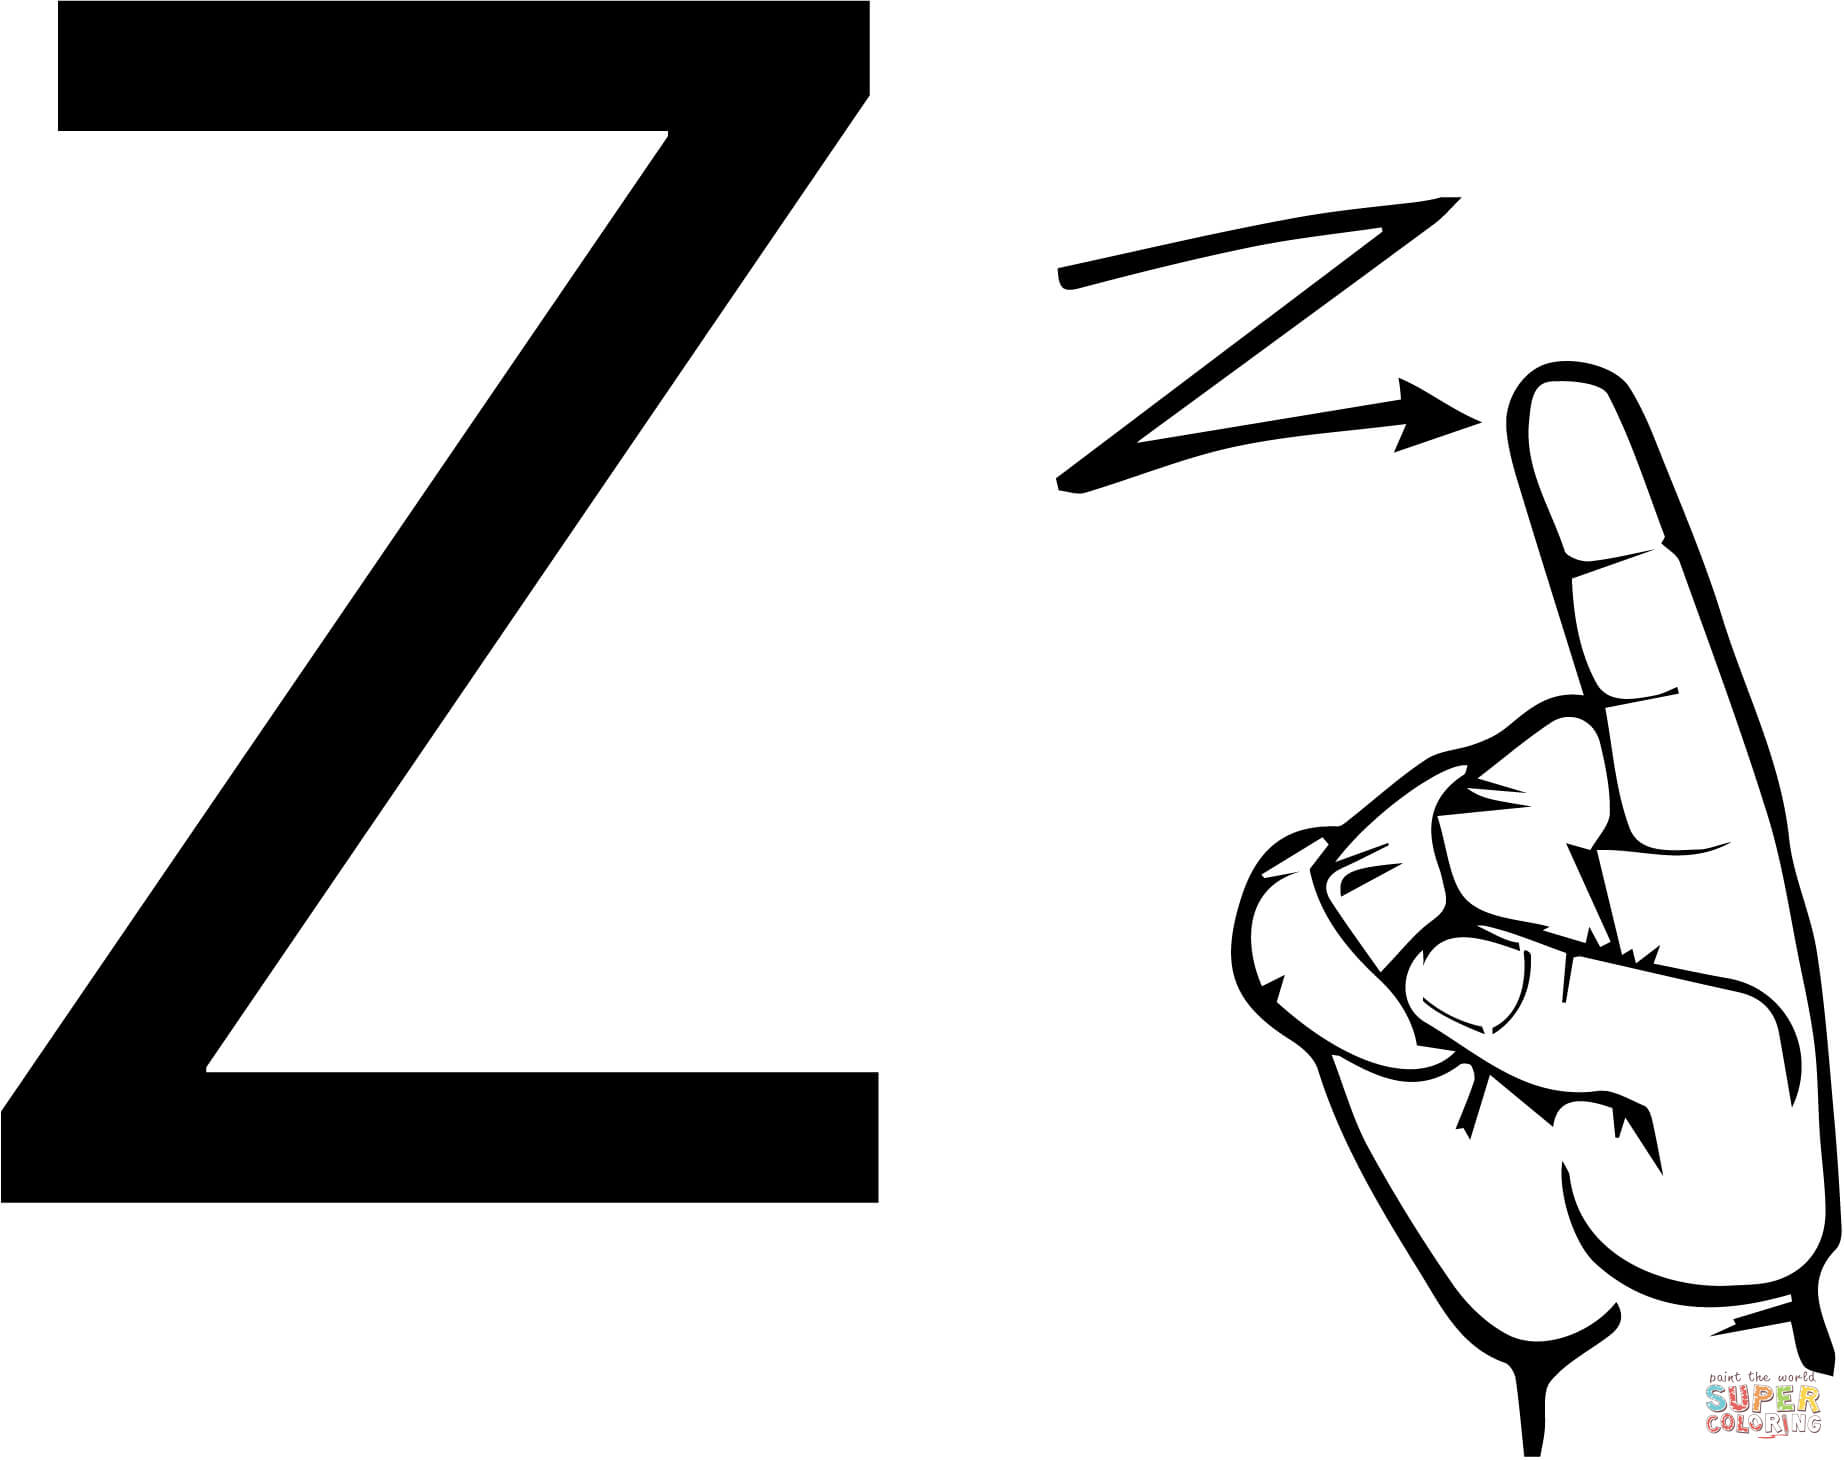 لغة الإشارة ASL حرف Z من الحرف Z